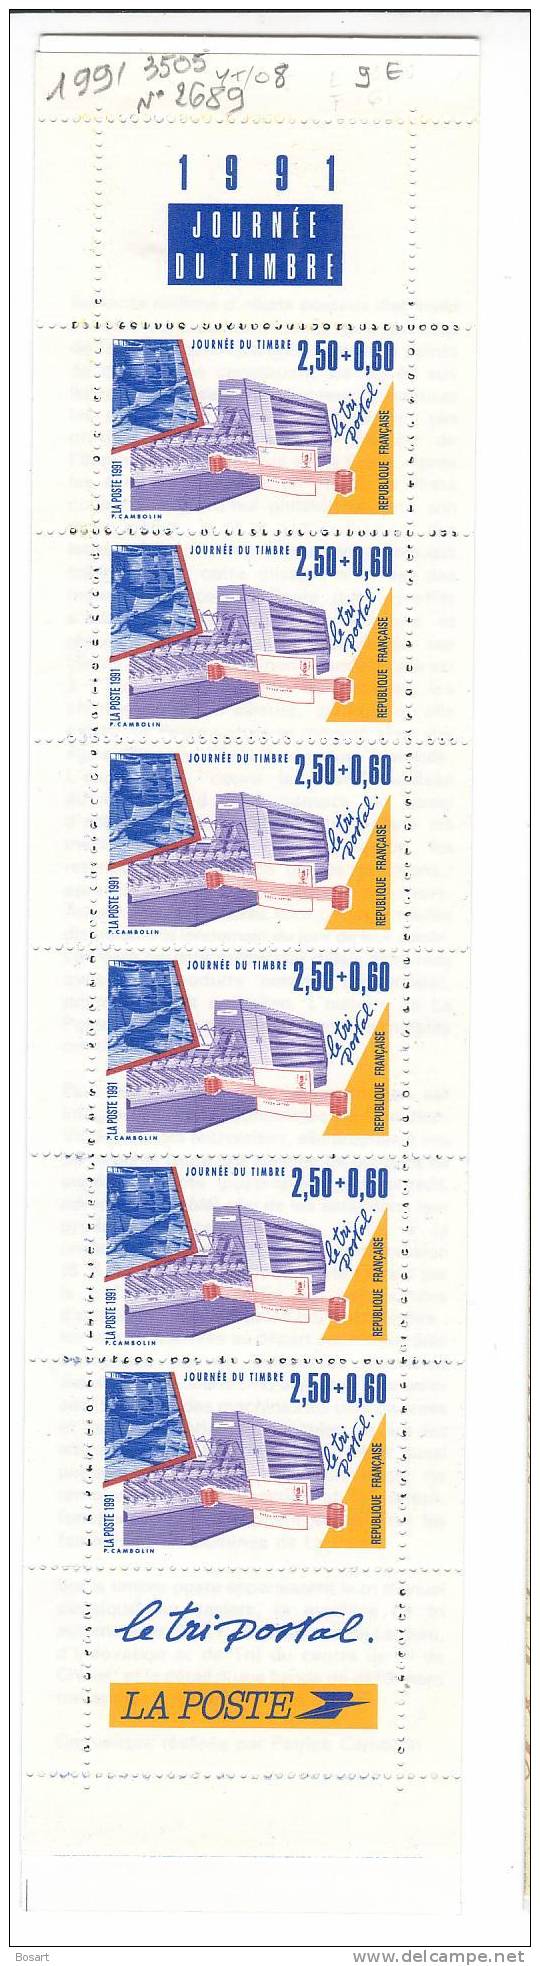 France Carnet Journée Du Timbre 1991 Neuf Y.T. 3505 Le Tri Postal 2689 - Tag Der Briefmarke